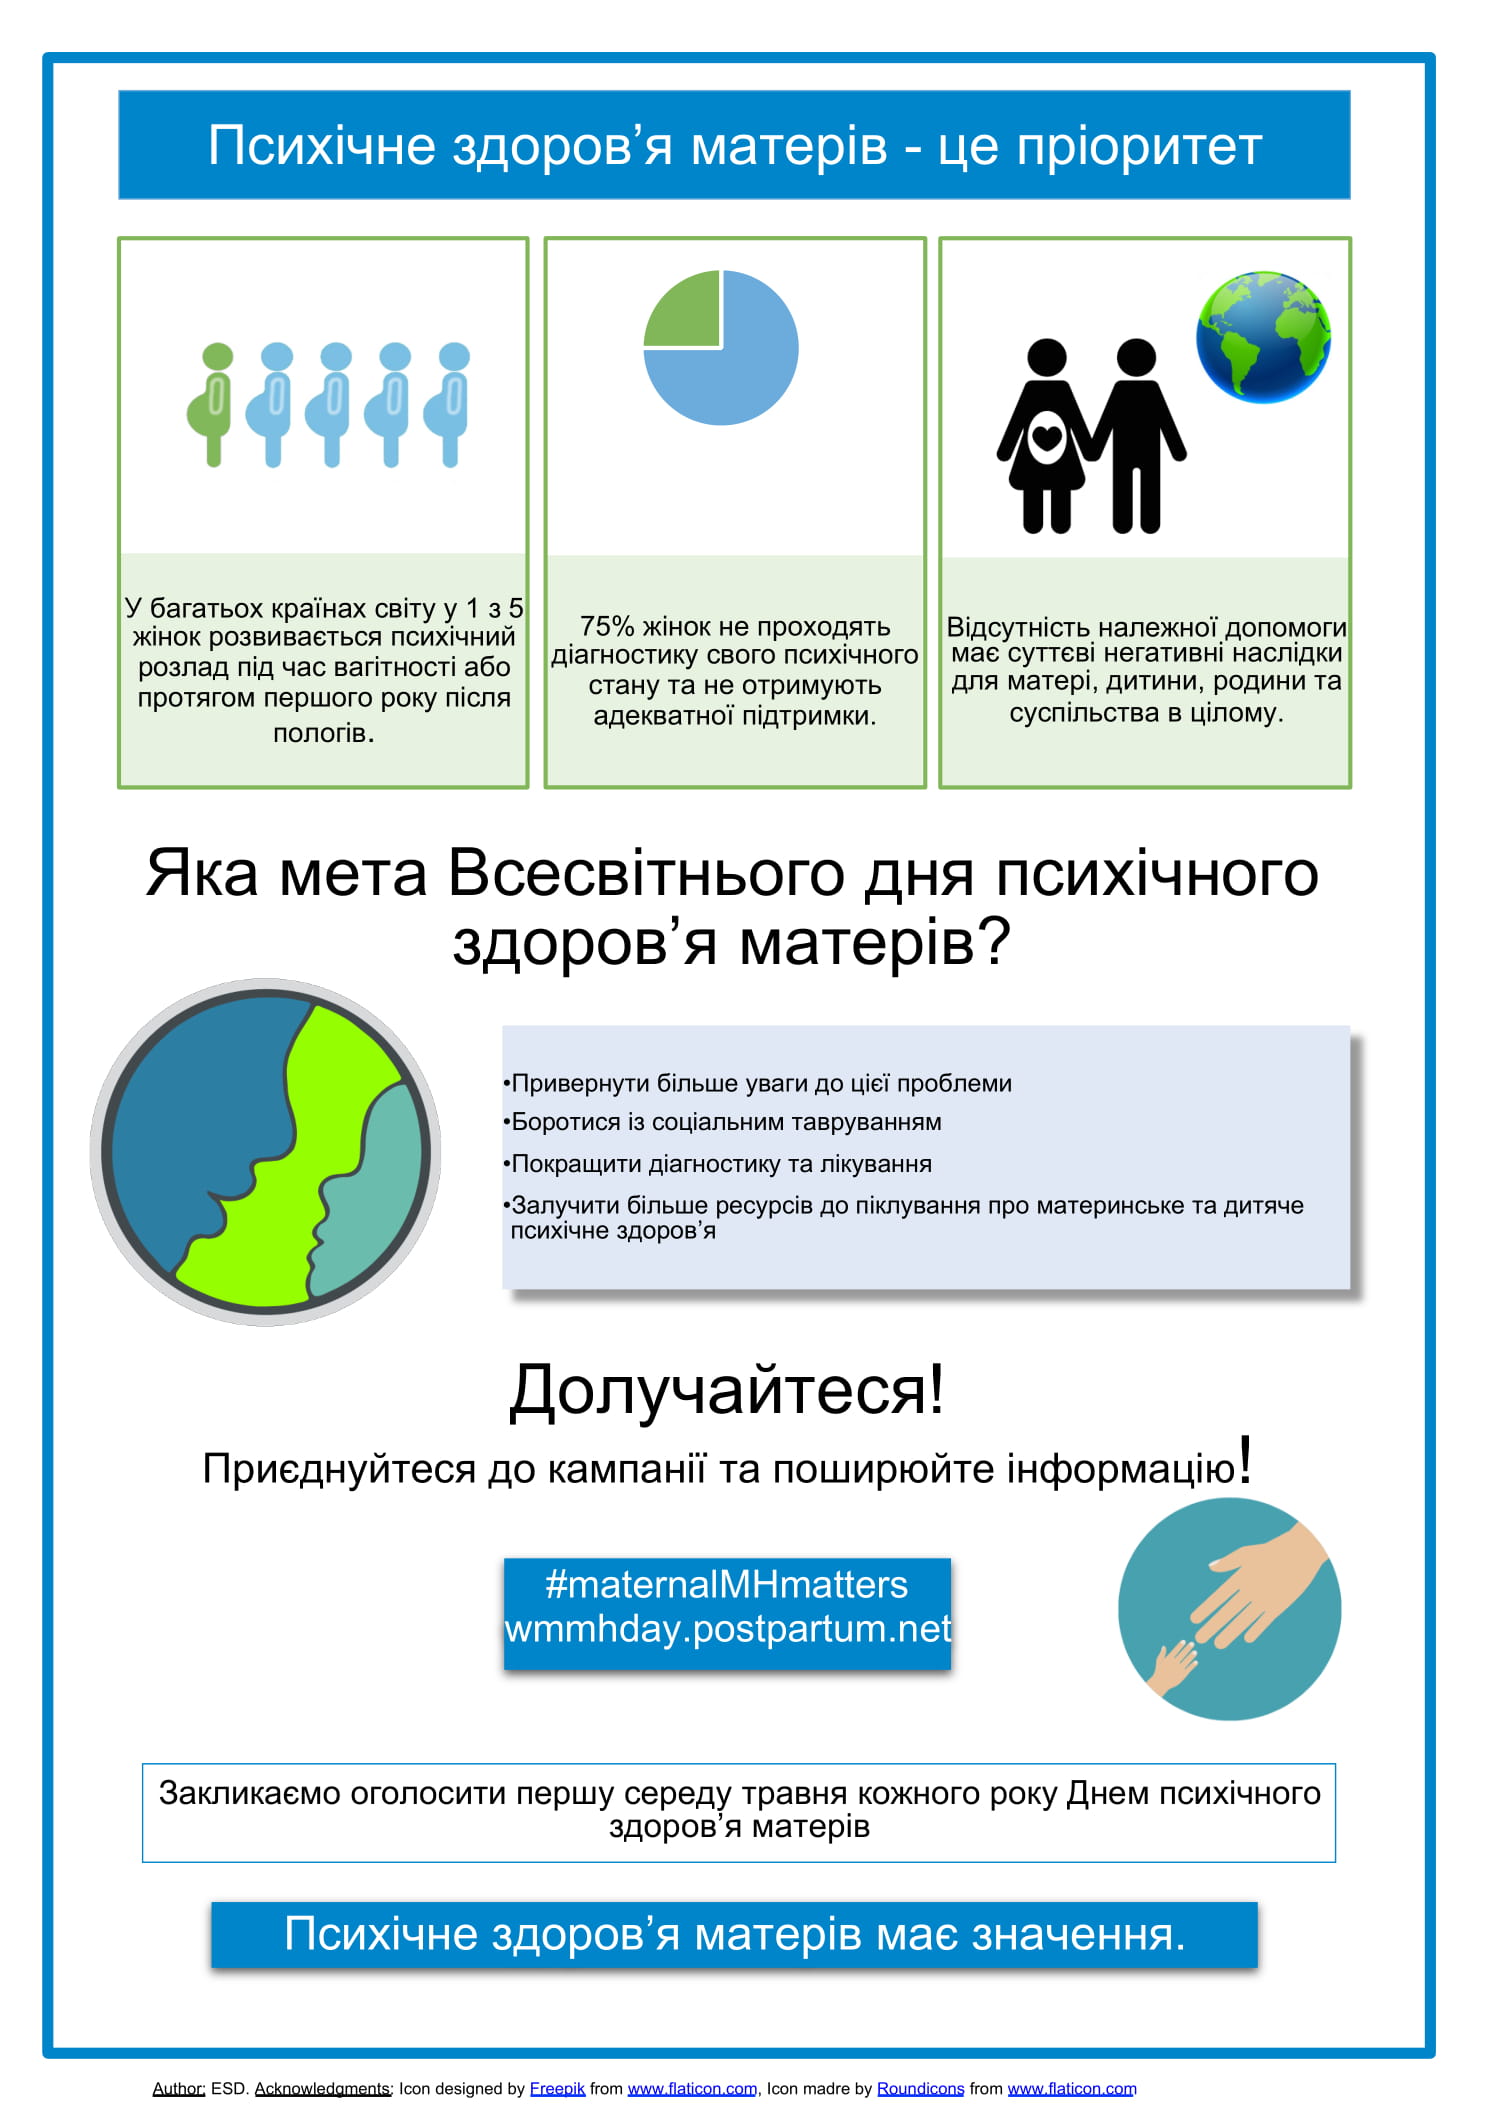 Инфографика к Всемирному дню психического здоровья матерей